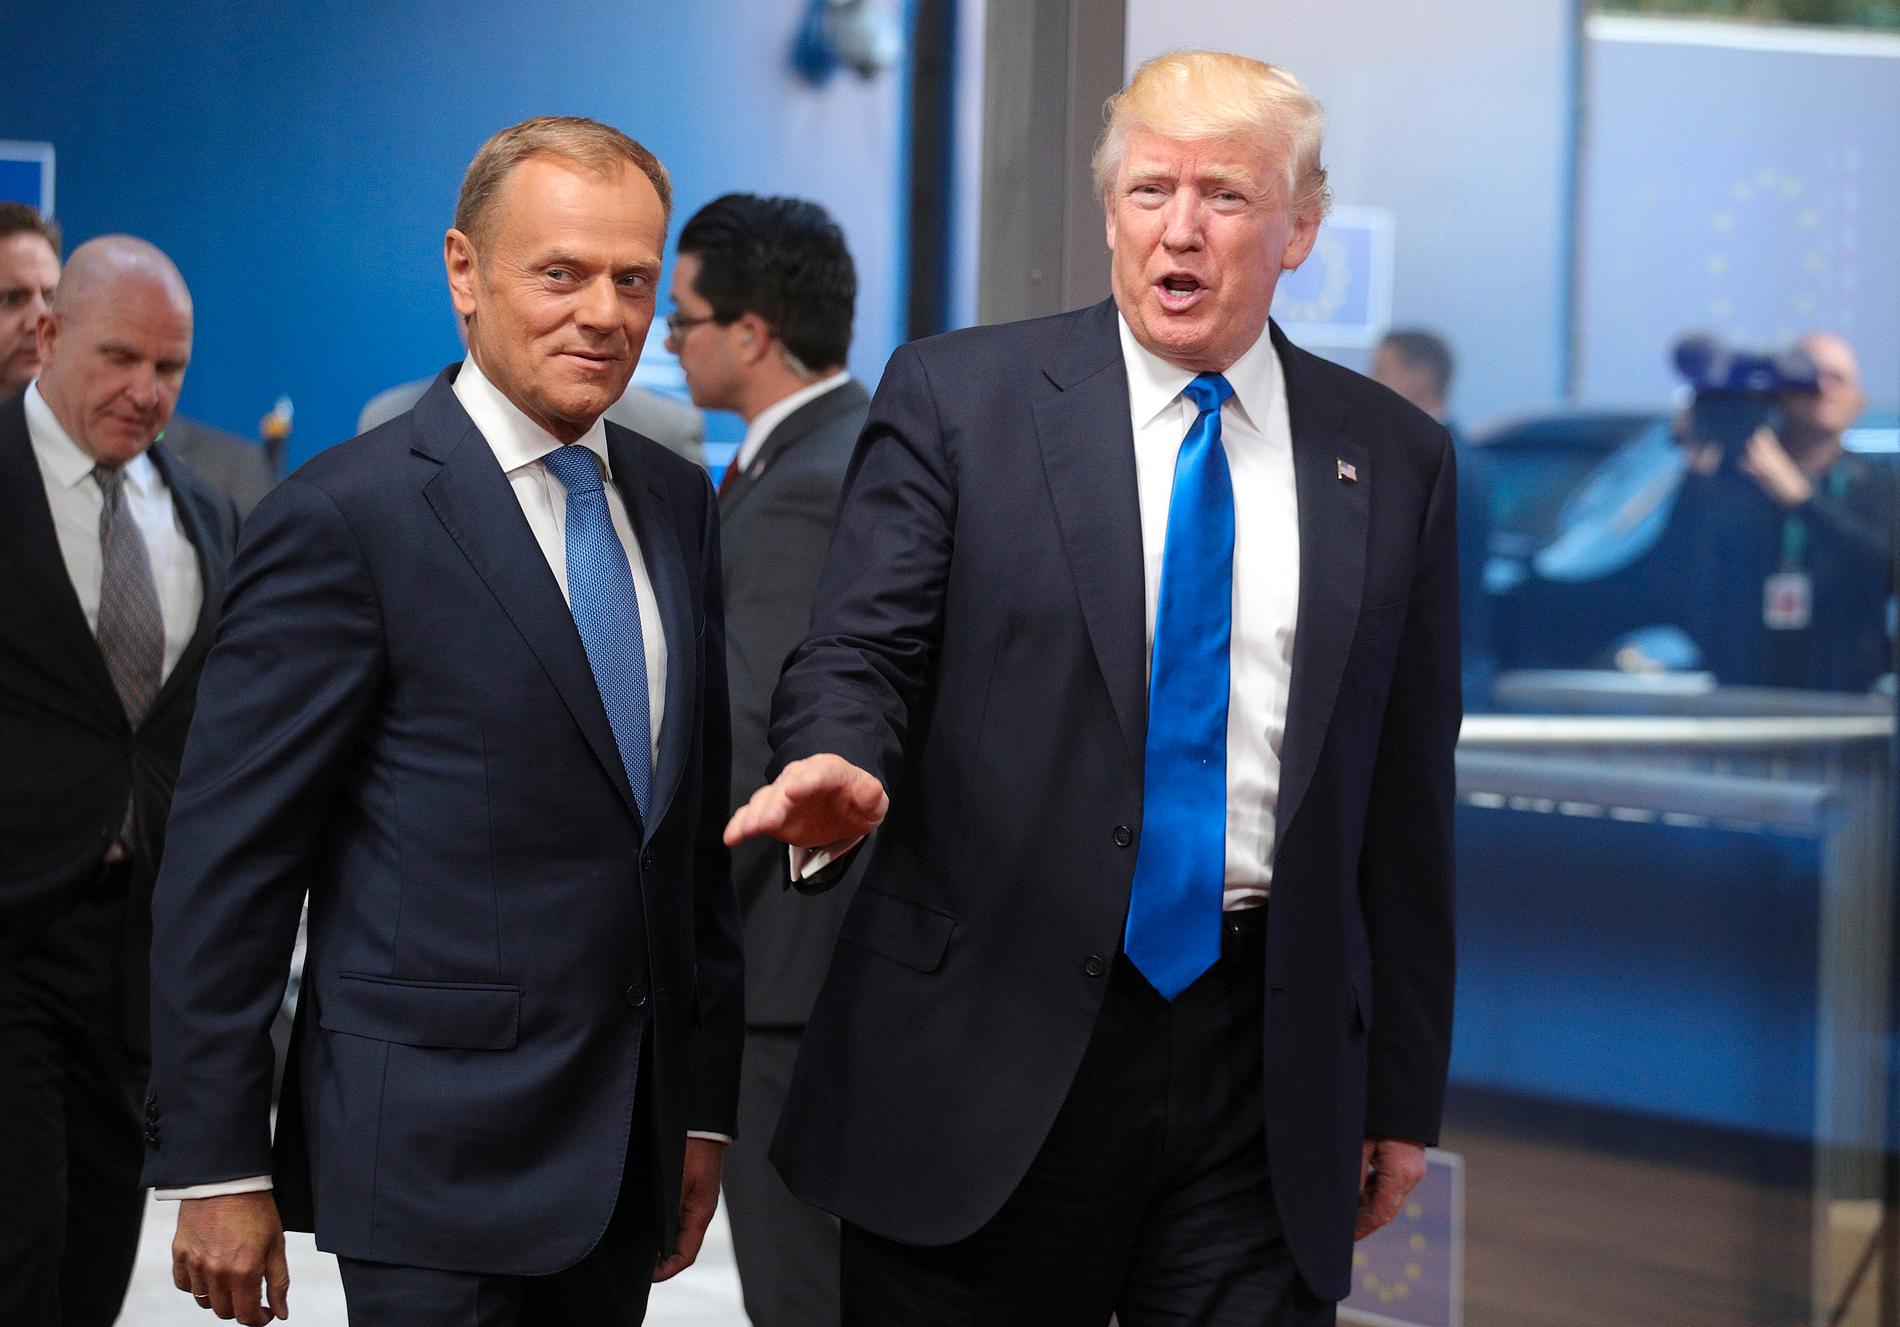 EU:s permanente rådsordförande Donald Tusk tillsammans med USA:s president Donald Trump i Bryssel i maj förra året.